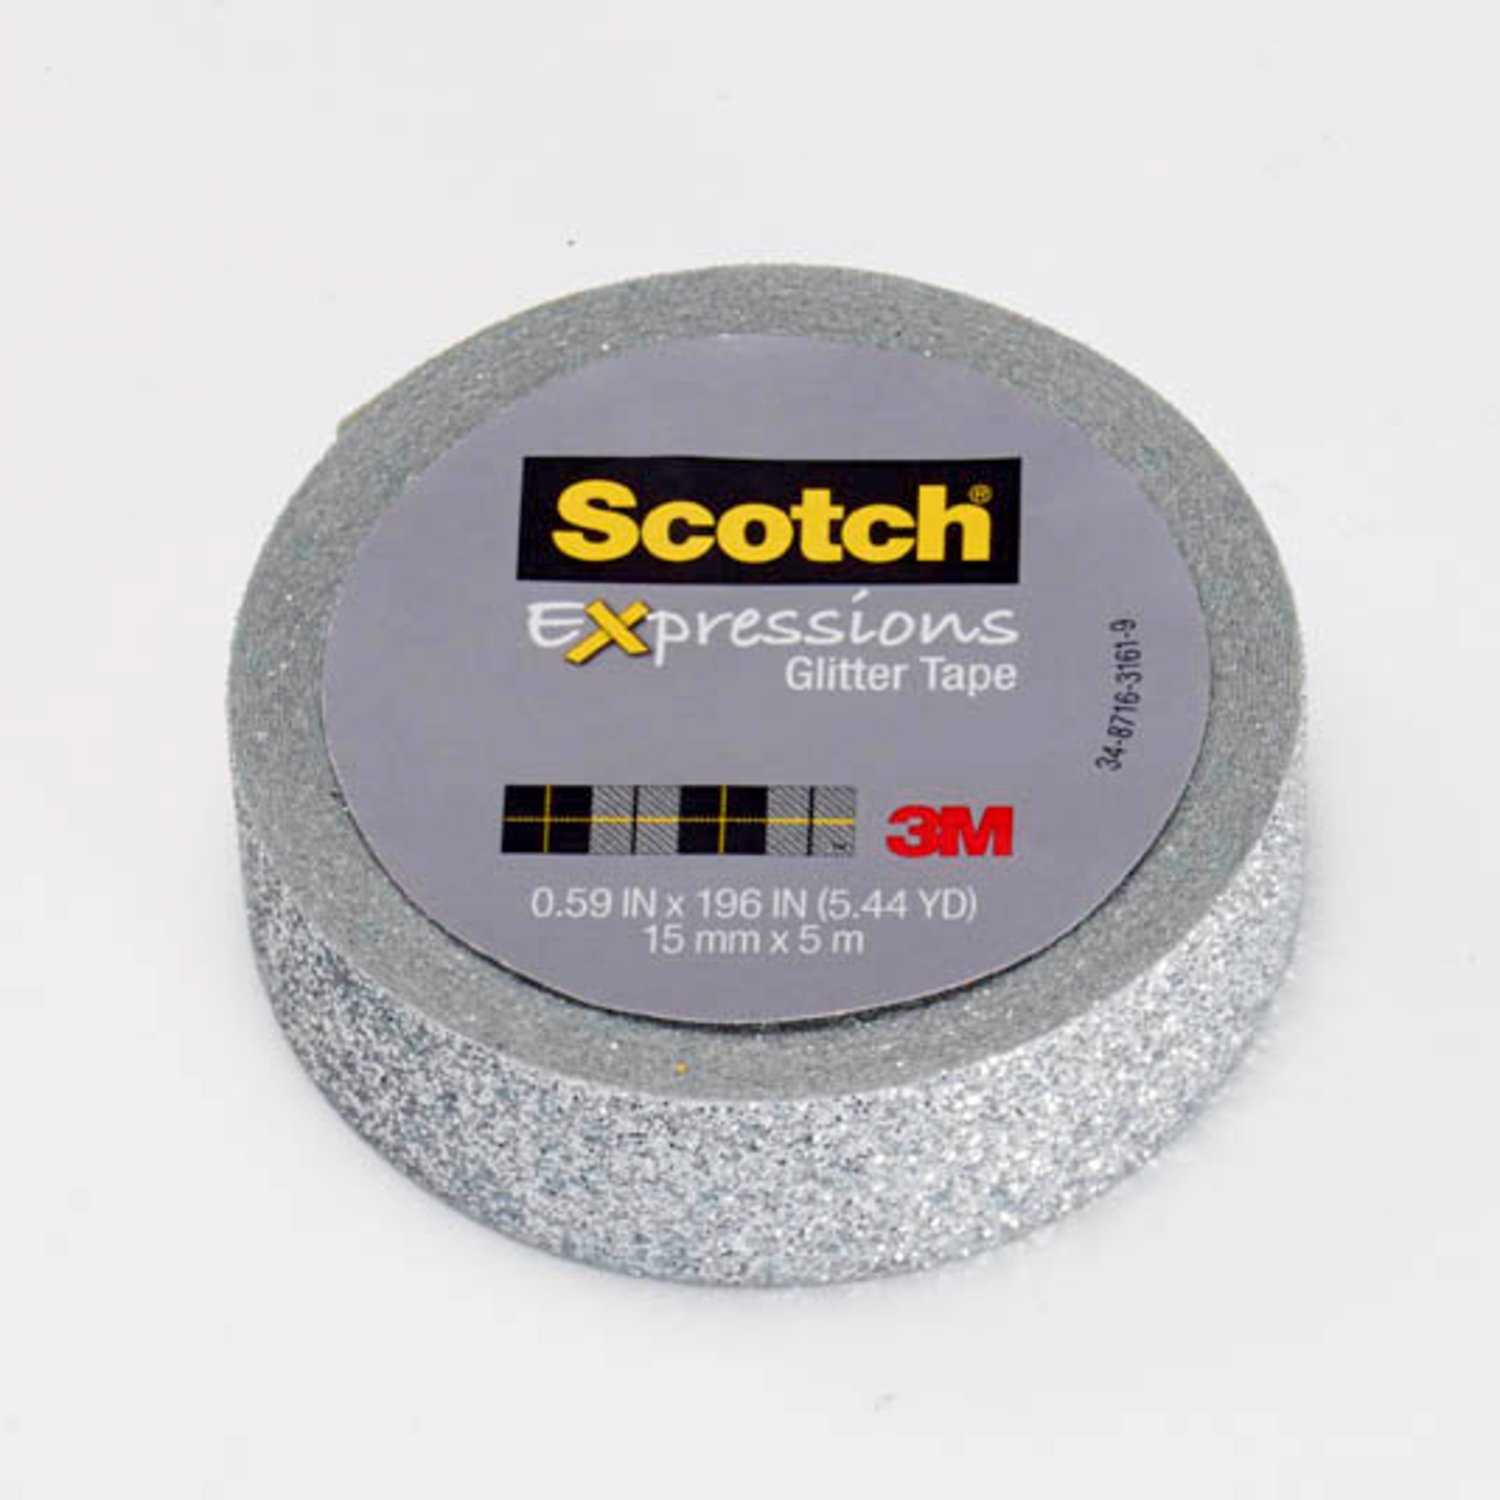 7100143029 - Scotch Expressions Glitter Tape C514-SIL, .59 in x 196 in (15 mm x 5 m)
Silver Glitter